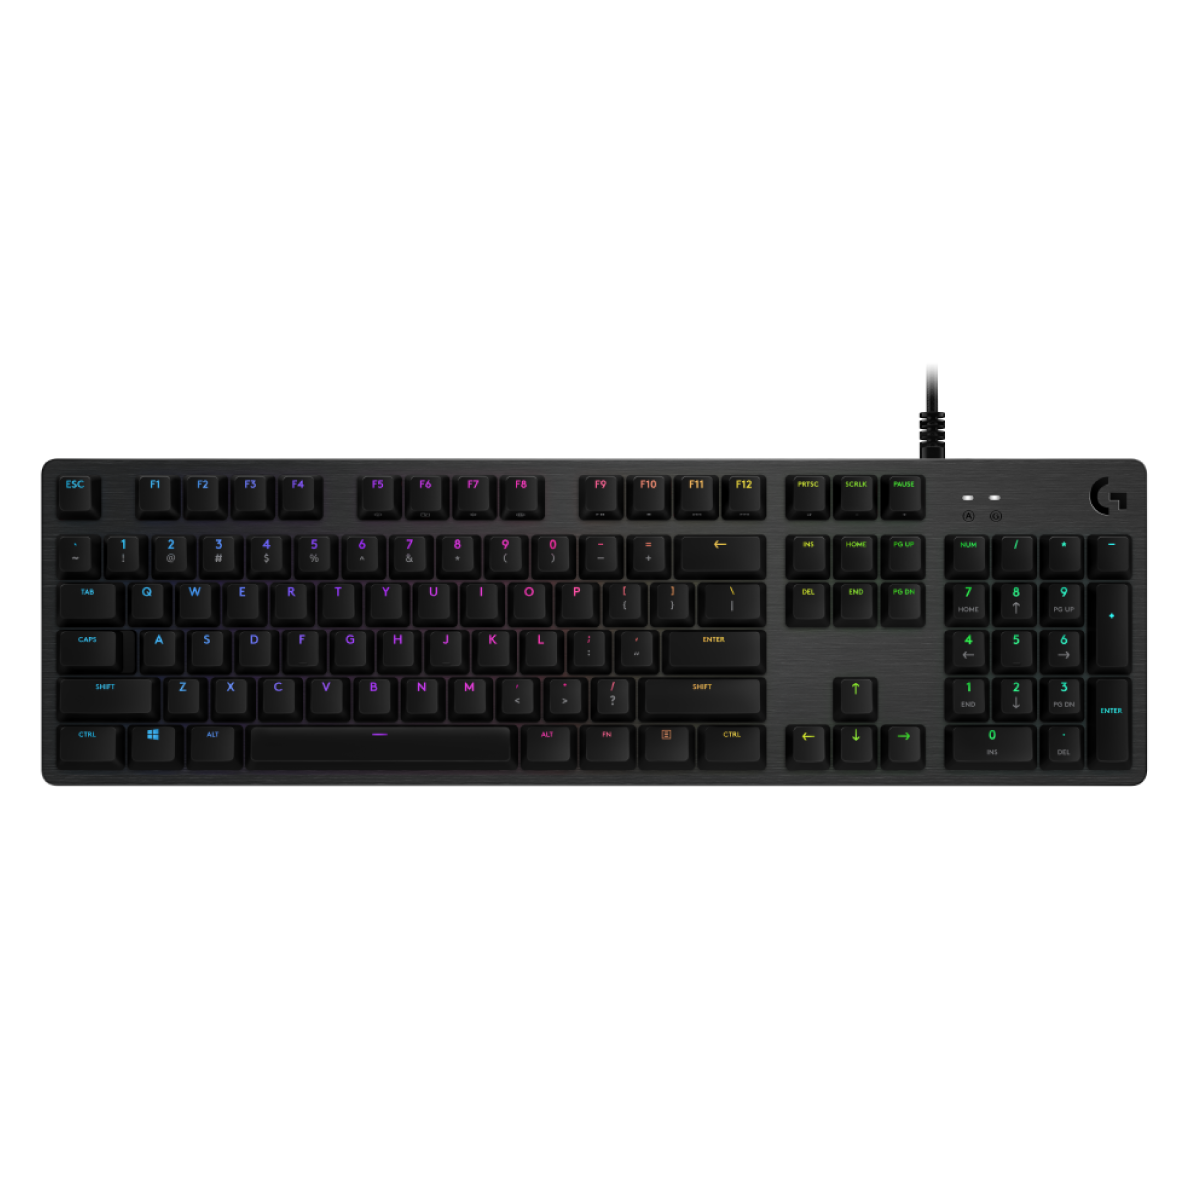 G512 LIGHTSYNC Gaming Keyboard